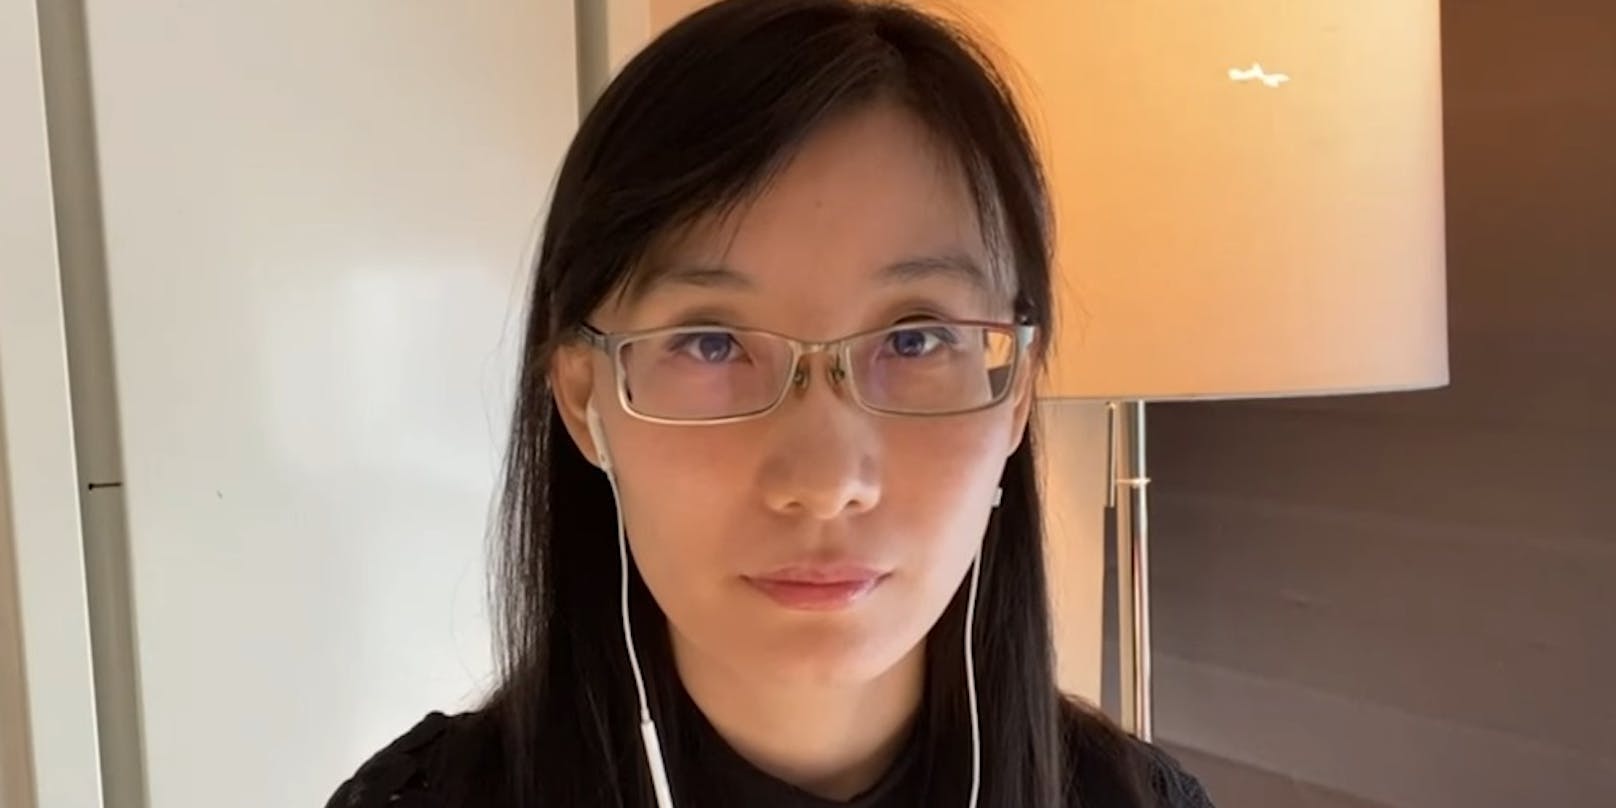 Dr. Li-Meng Yan floh im April in die USA, denn sie wisse, wie China mit Whistleblowern umgehe. Nun möchte sie aber die Wahrheit über das Virus verbreiten. <br>